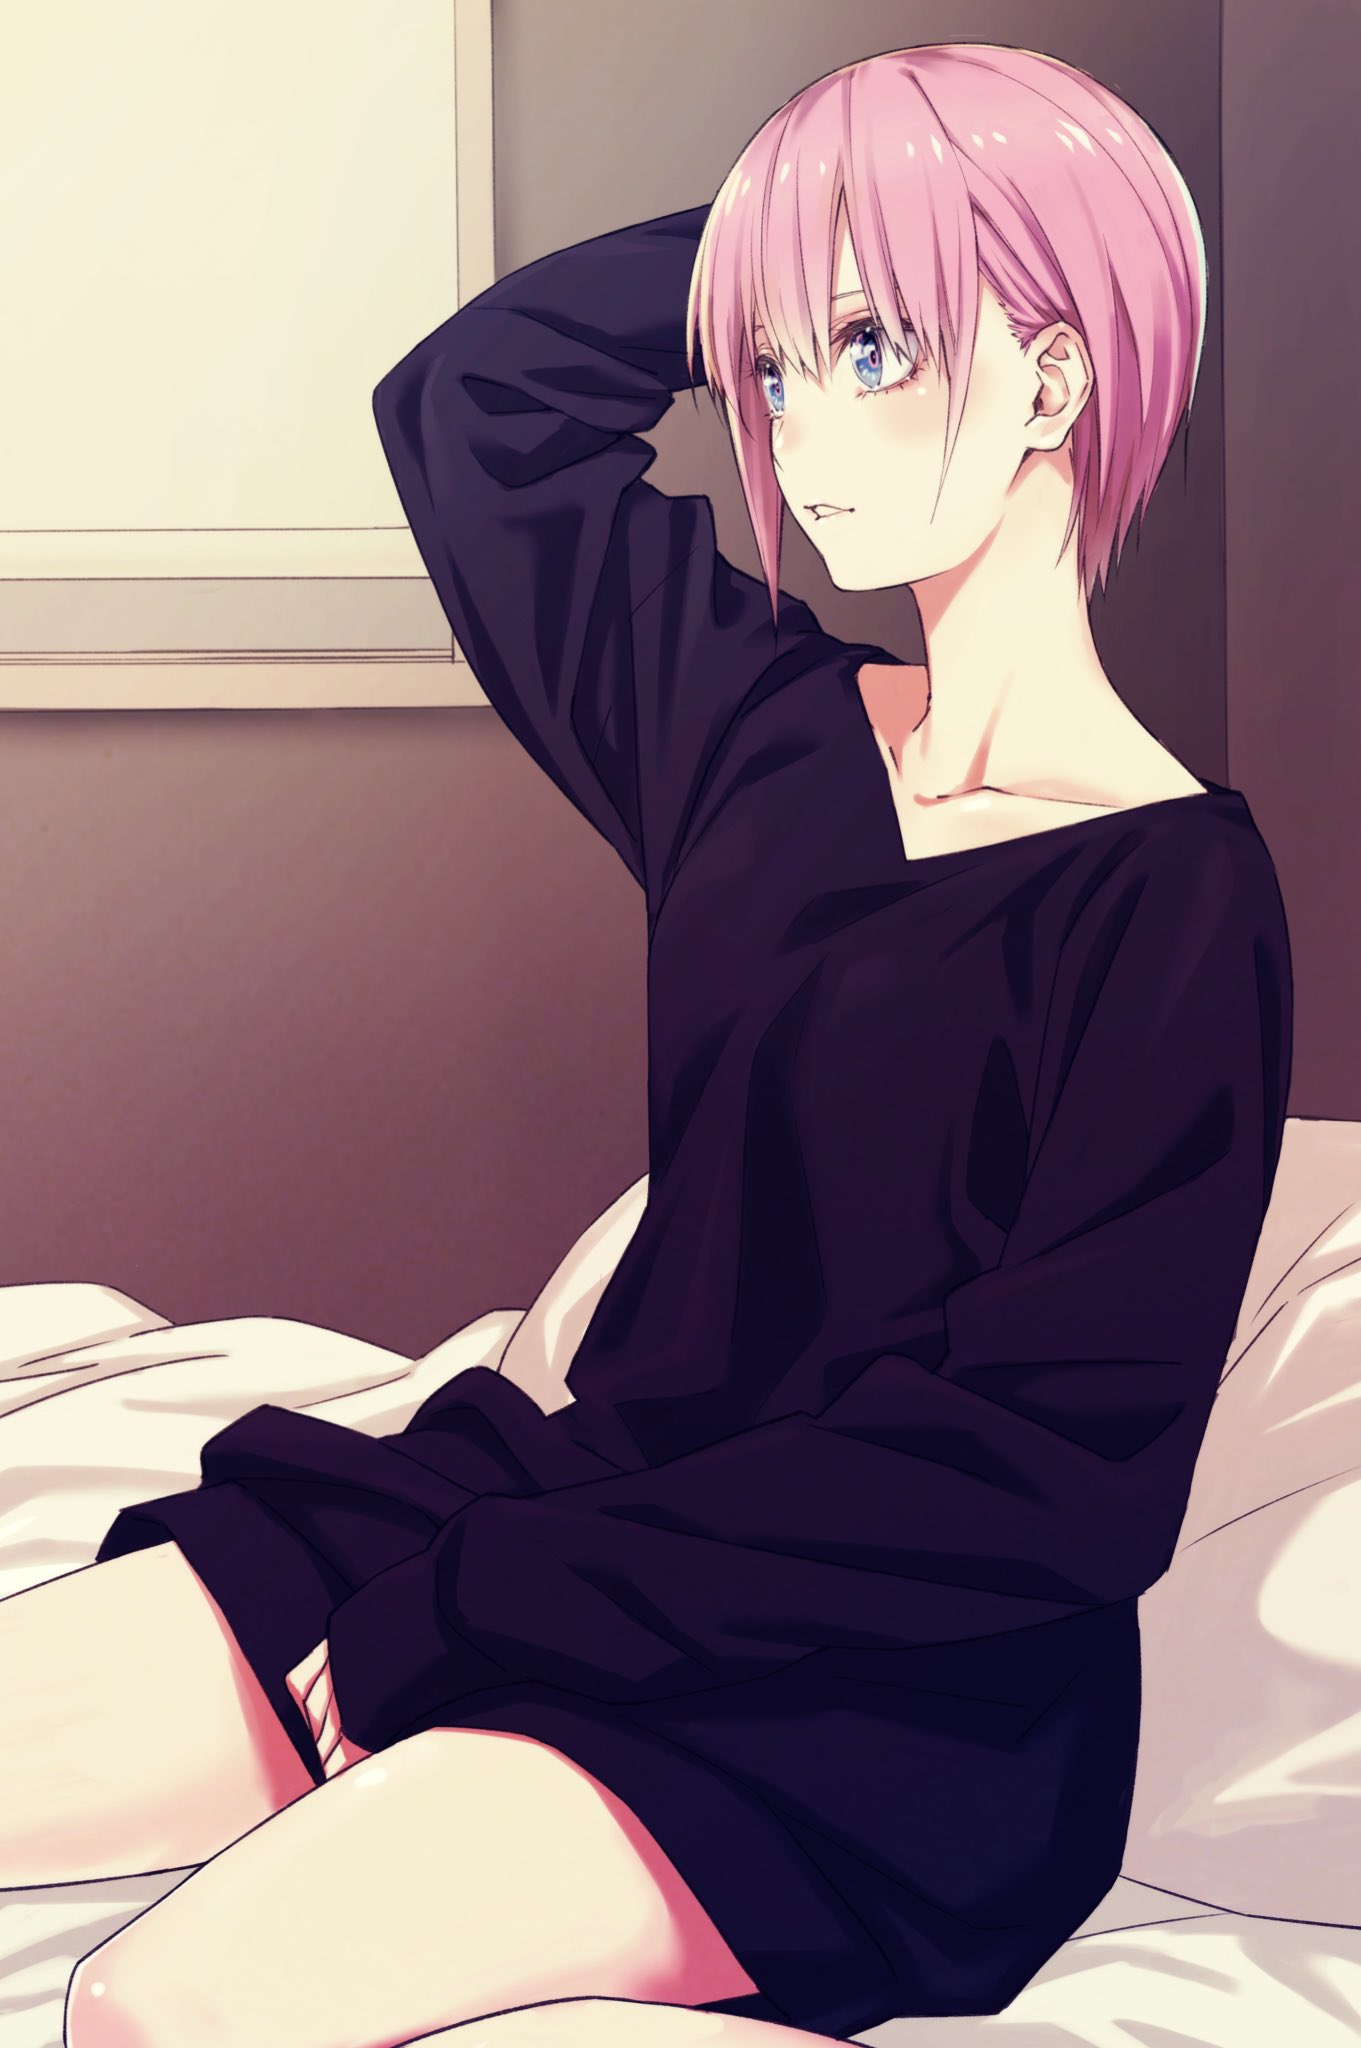 5 Toubun No Hanayome Pink Hair Vertical JK Long Sleeves Bangs Black Shirt Anime Girls Blue Eyes In B 1361x2048